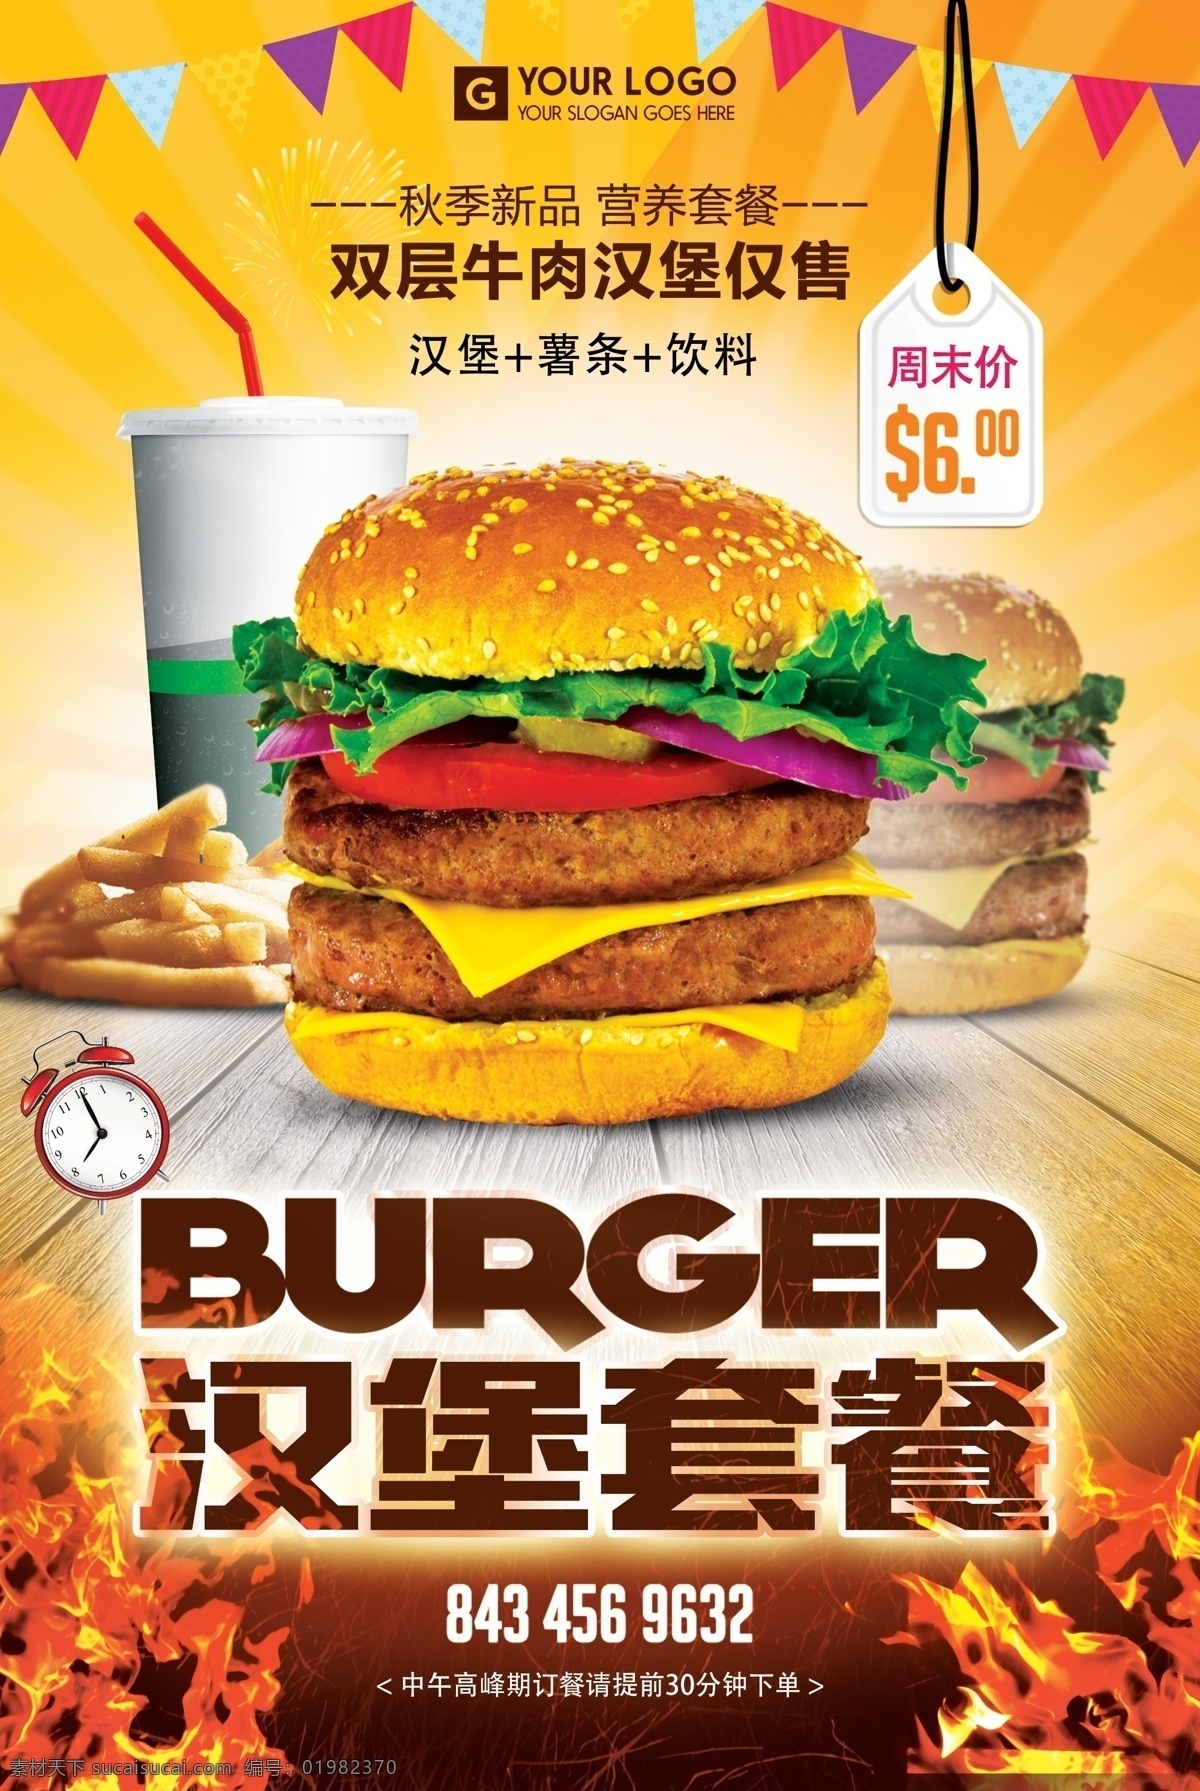 双层 牛肉 汉堡 套餐 餐饮 海报背景 创意海报 创意背景 时尚海报 海报 海报素材 海报模板 卡通海报 模板下载 设计创意海报 海报图片 免费 免费模板 免费素材 平面素材 汉堡套餐